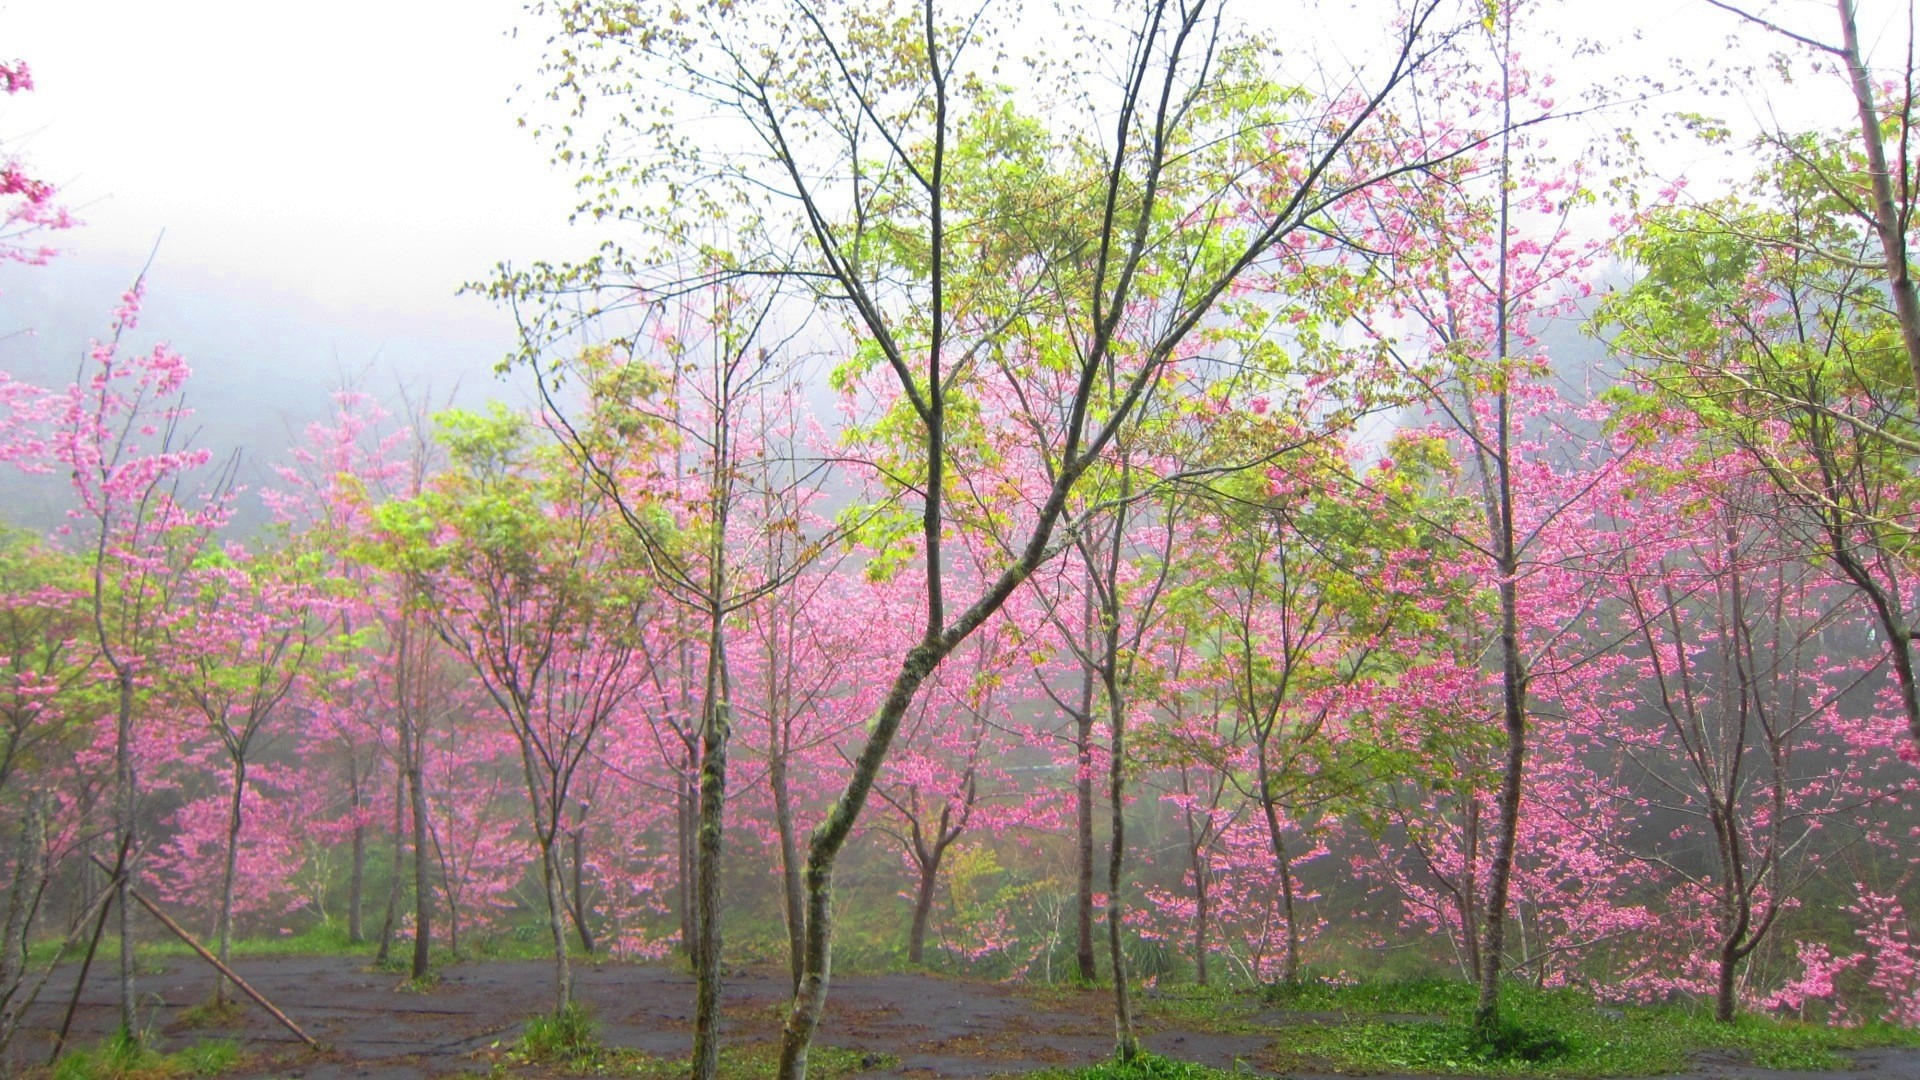 Скачать обои бесплатно Деревья, Вишня, Дерево, Туман, Цветущие, Земля/природа, Розовый Цветок картинка на рабочий стол ПК